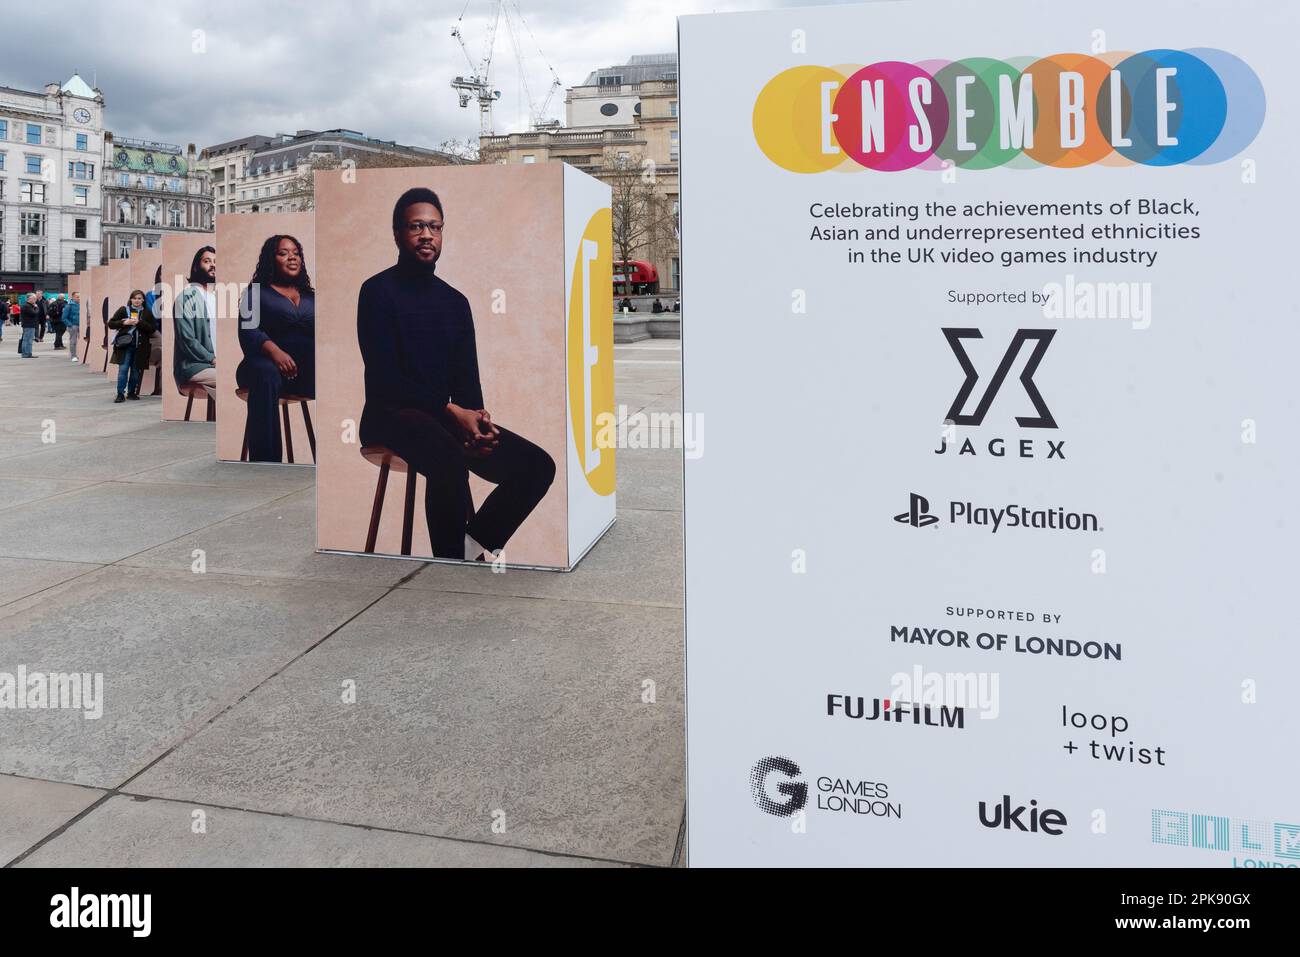 Ensemble - exposition d'art publique mettant en vedette les talents de jeux vidéo britanniques d'ethnies noires, asiatiques et sous-représentées, dans le cadre du Festival des Jeux de Londres. Banque D'Images